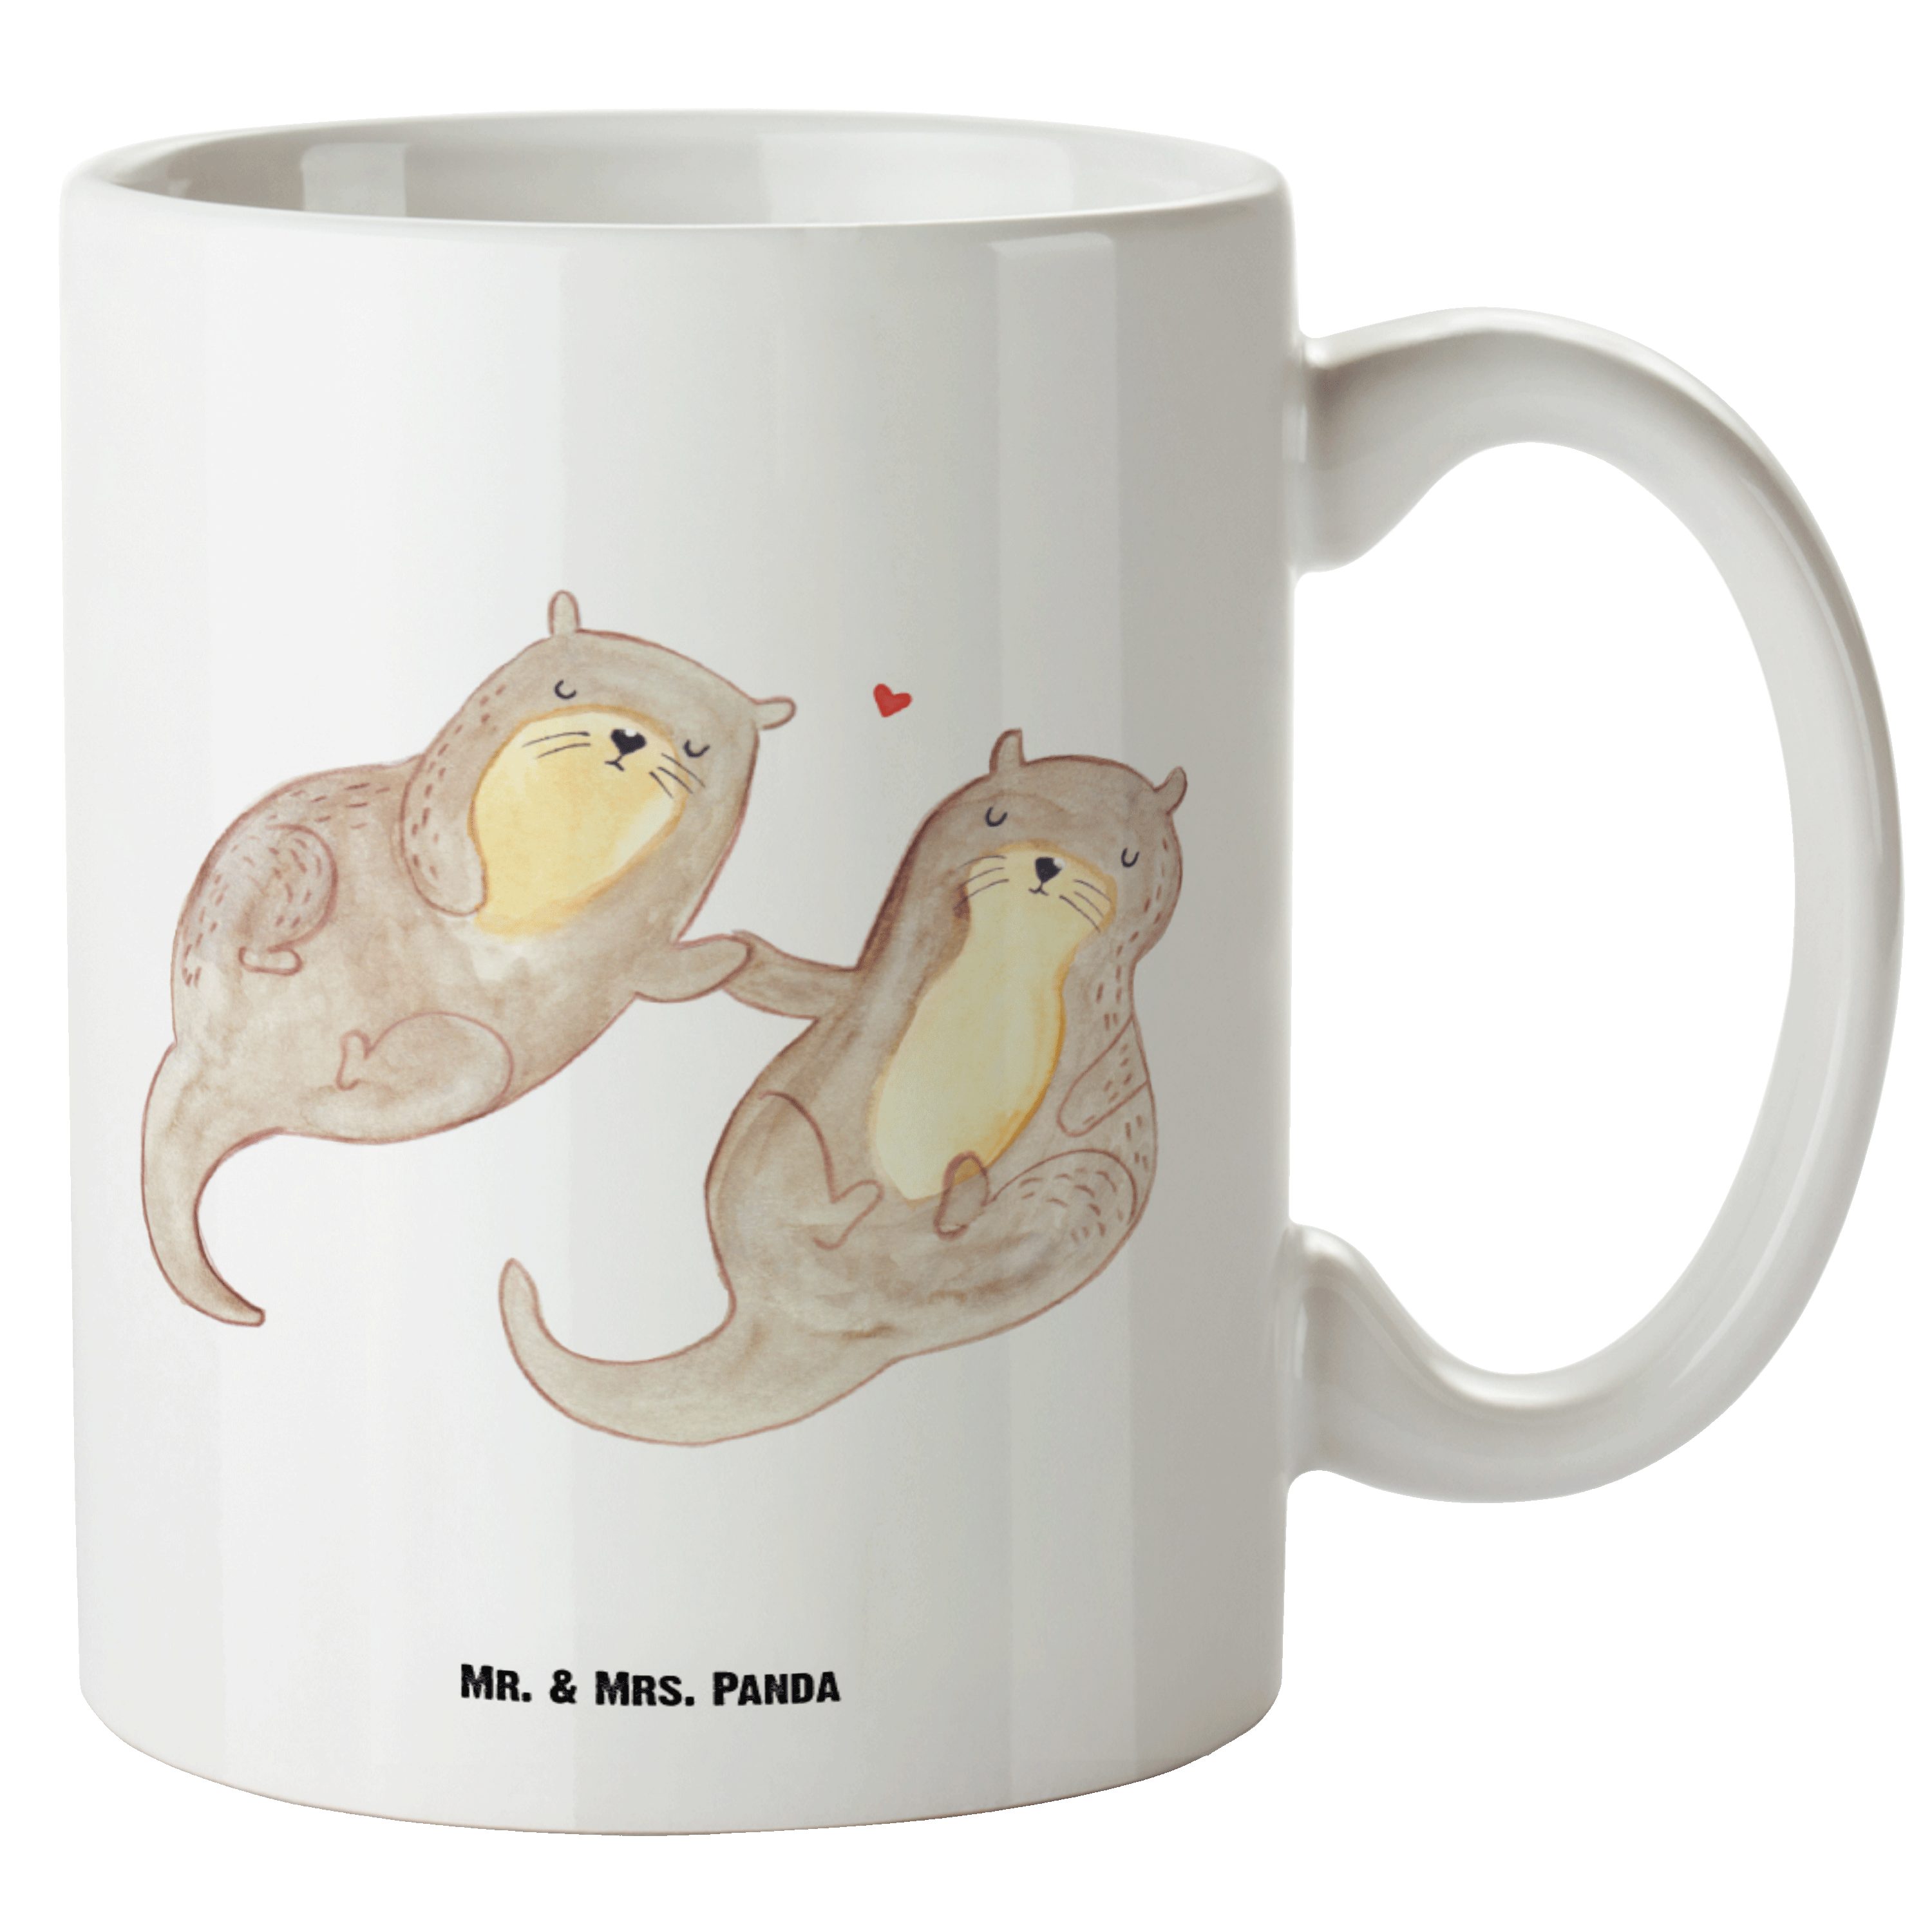 Mr. & Mrs. Panda Tasse Otter händchenhaltend - Weiß - Geschenk, Große Tasse, Seeotter, Fisch, XL Tasse Keramik